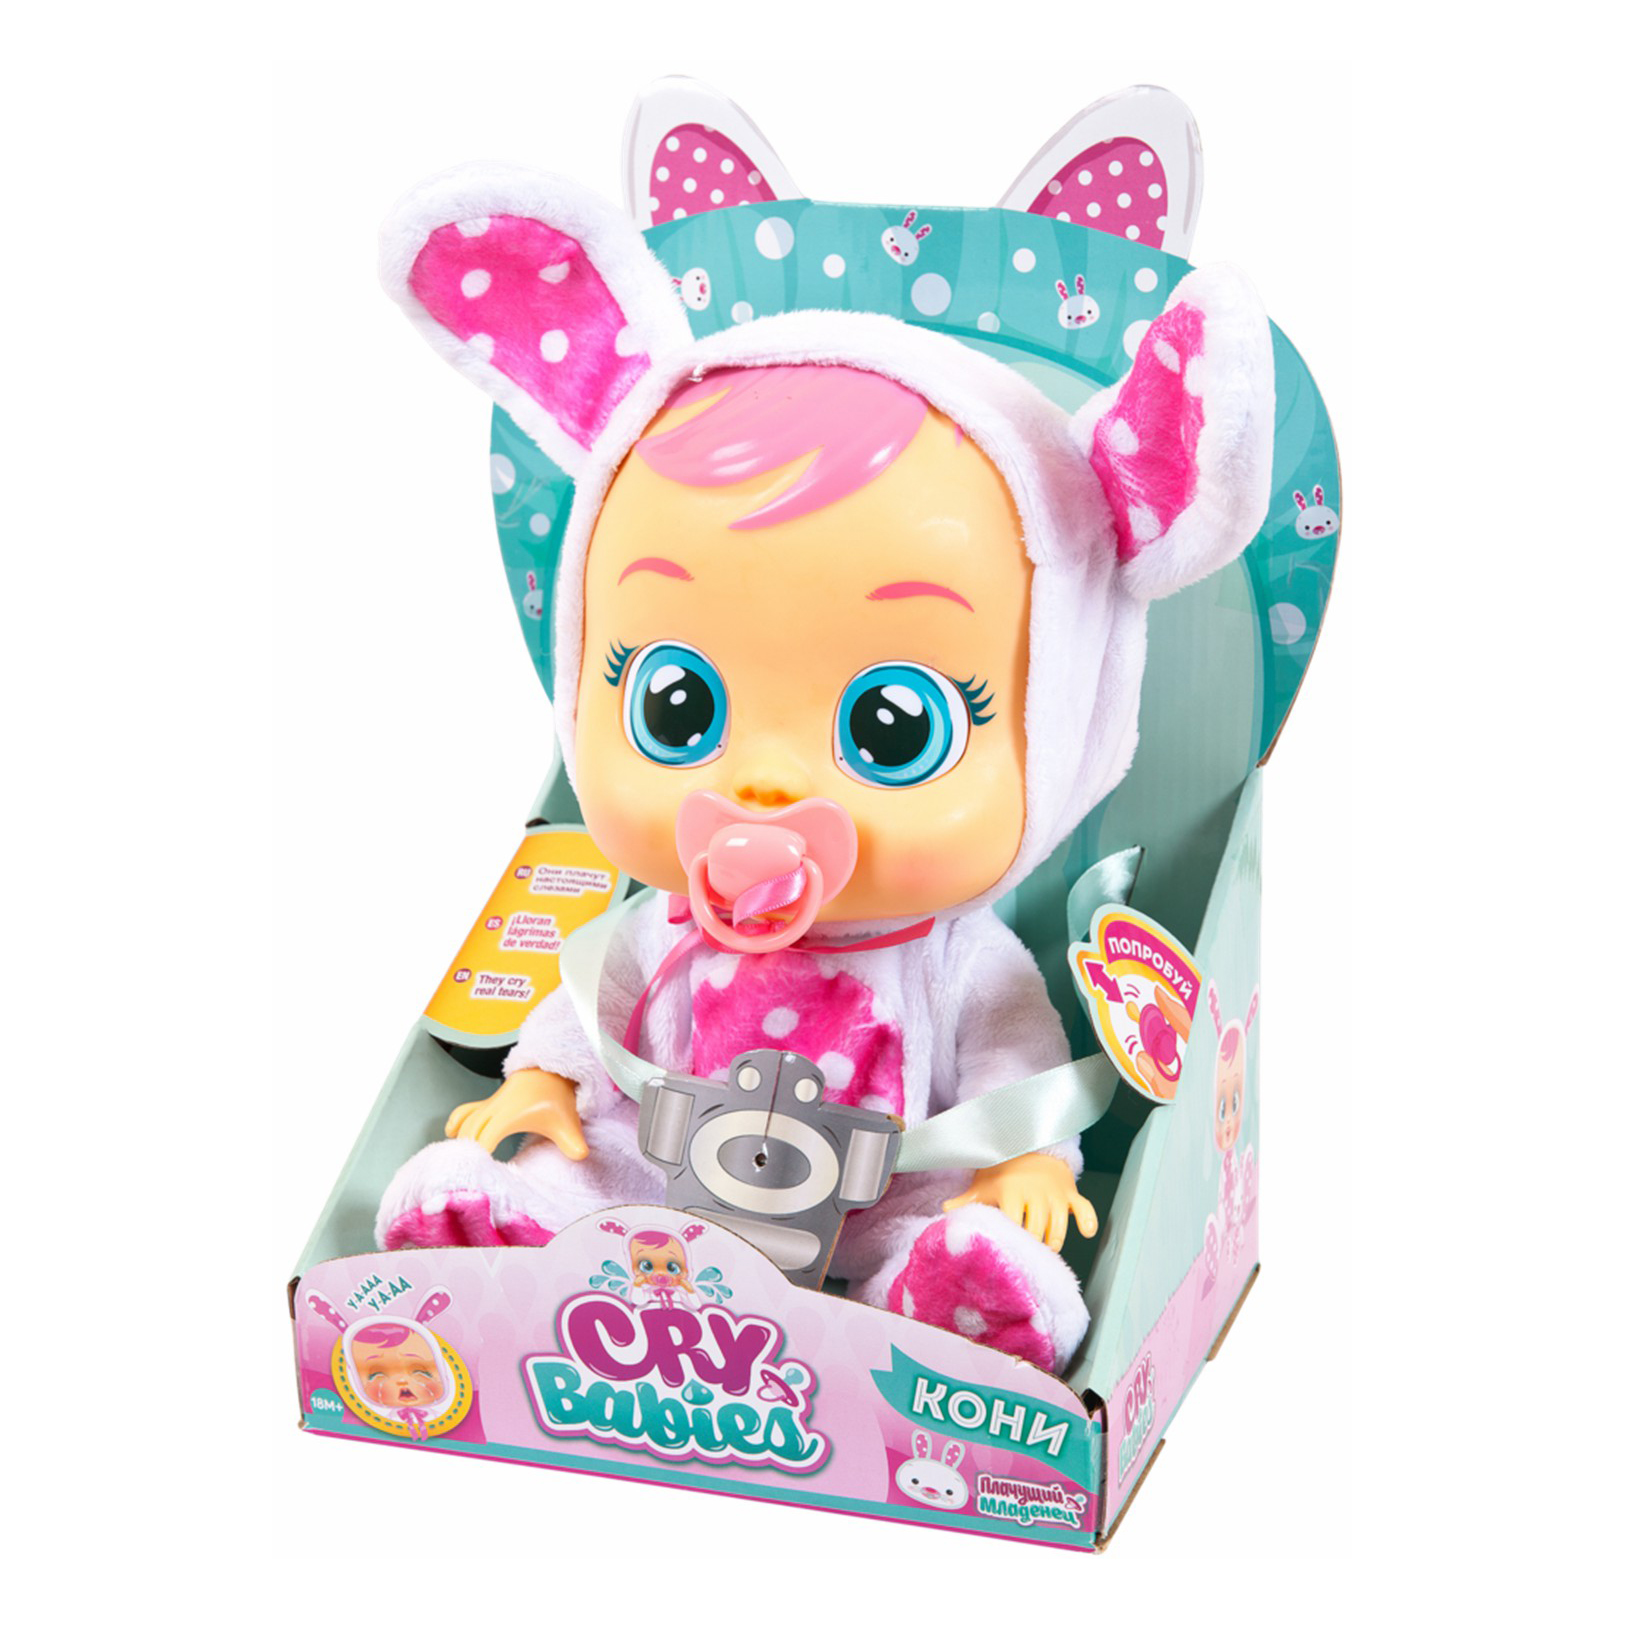 Кукла Crybabies Леди Баг IMC Toys 31 см кукла crybabies леди баг imc toys 31 см